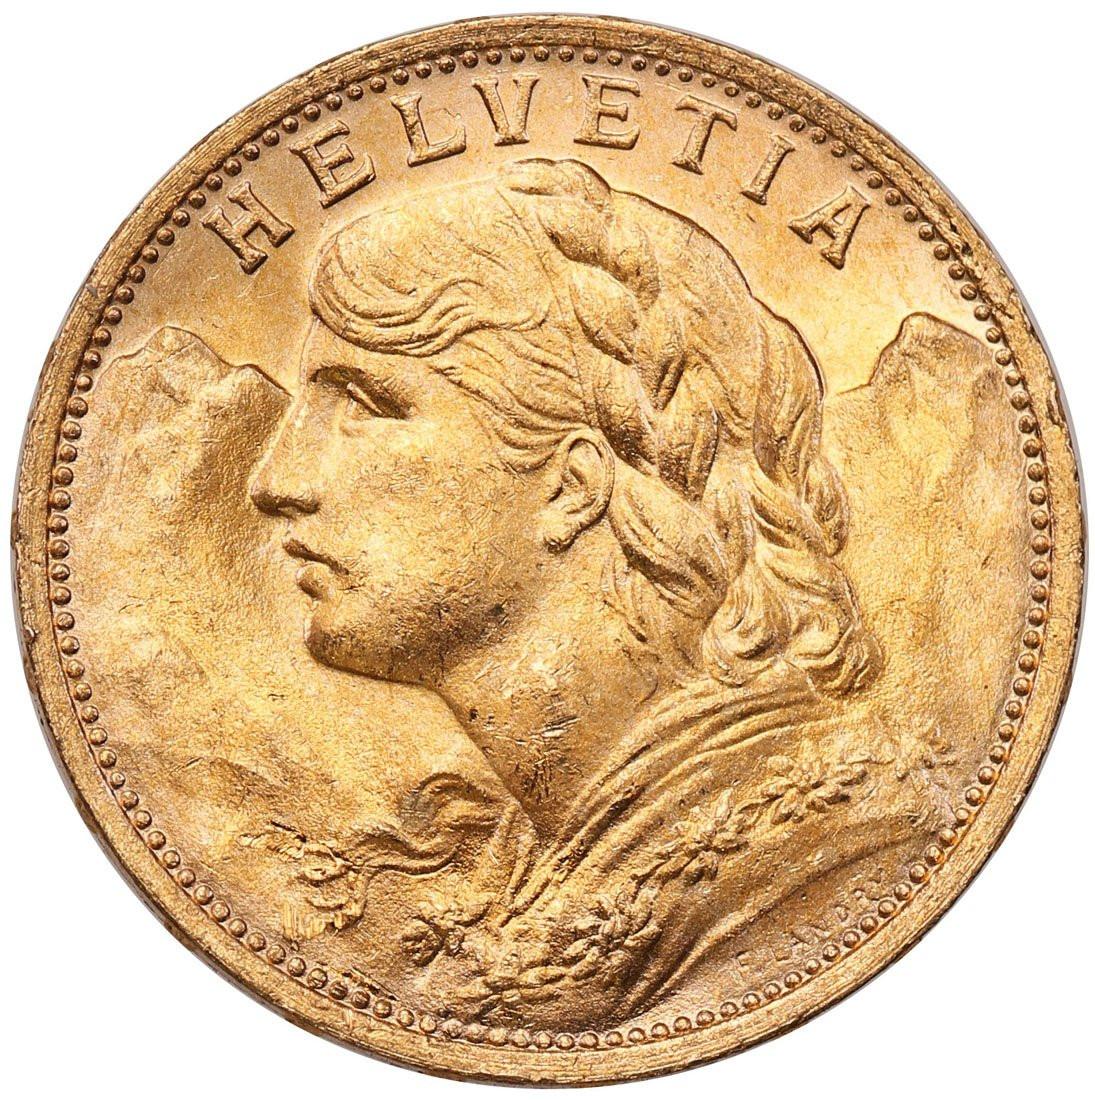 Szwajcaria Helvetia 20 franków 1927 st.1/1-